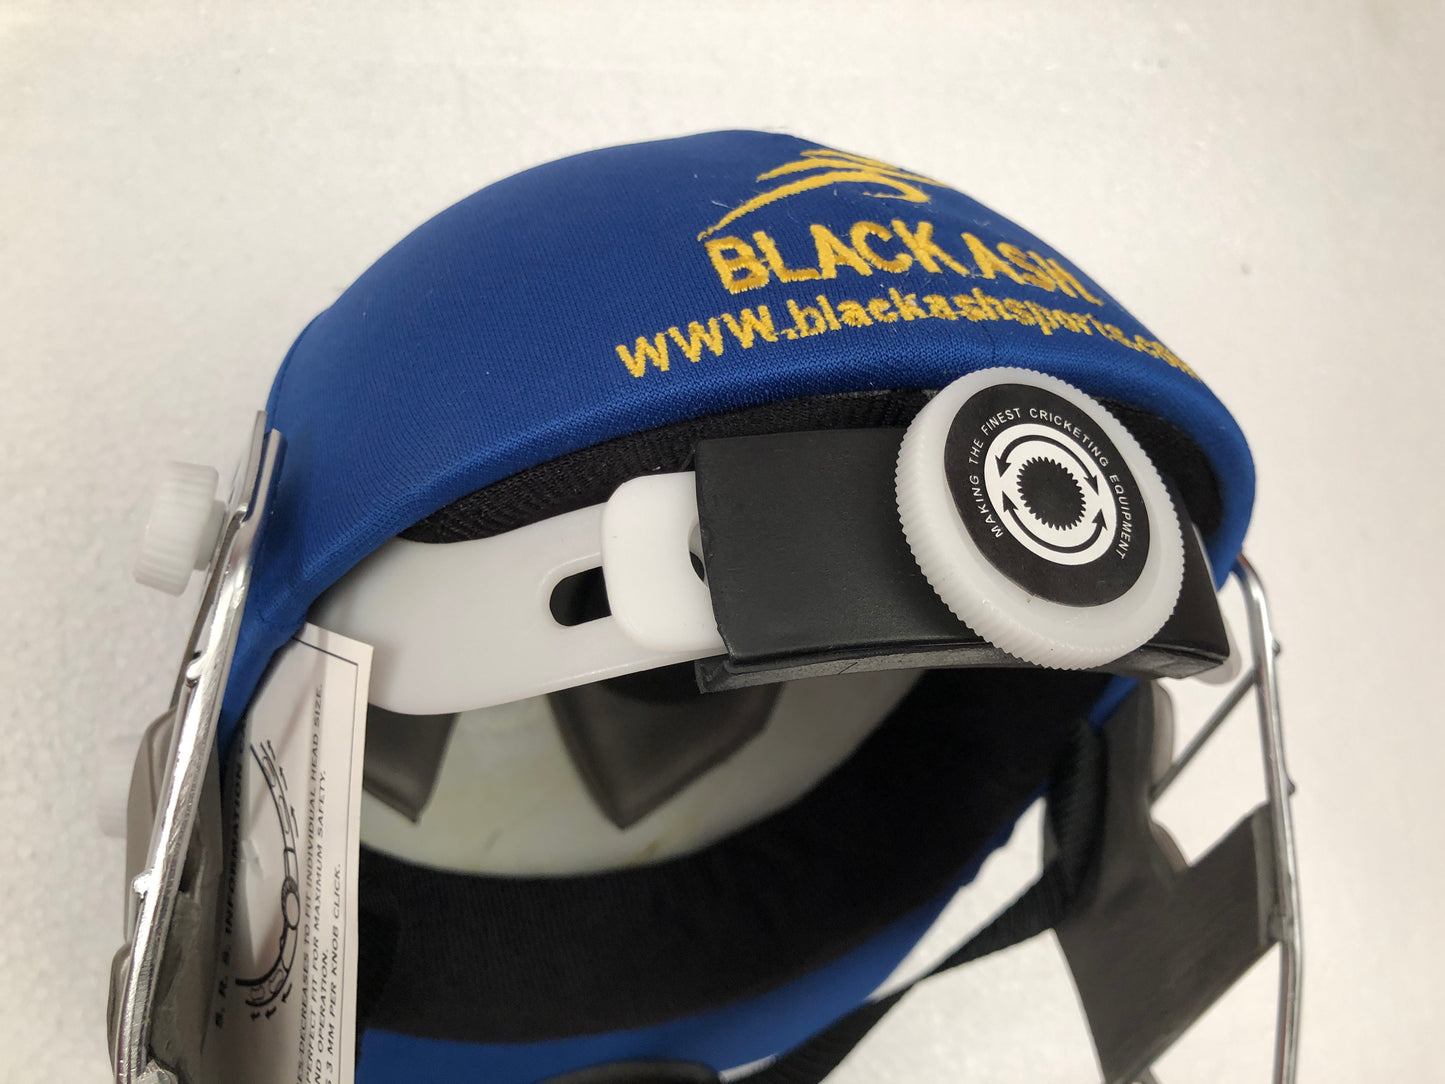 Black Ash custom International adjustable helmet